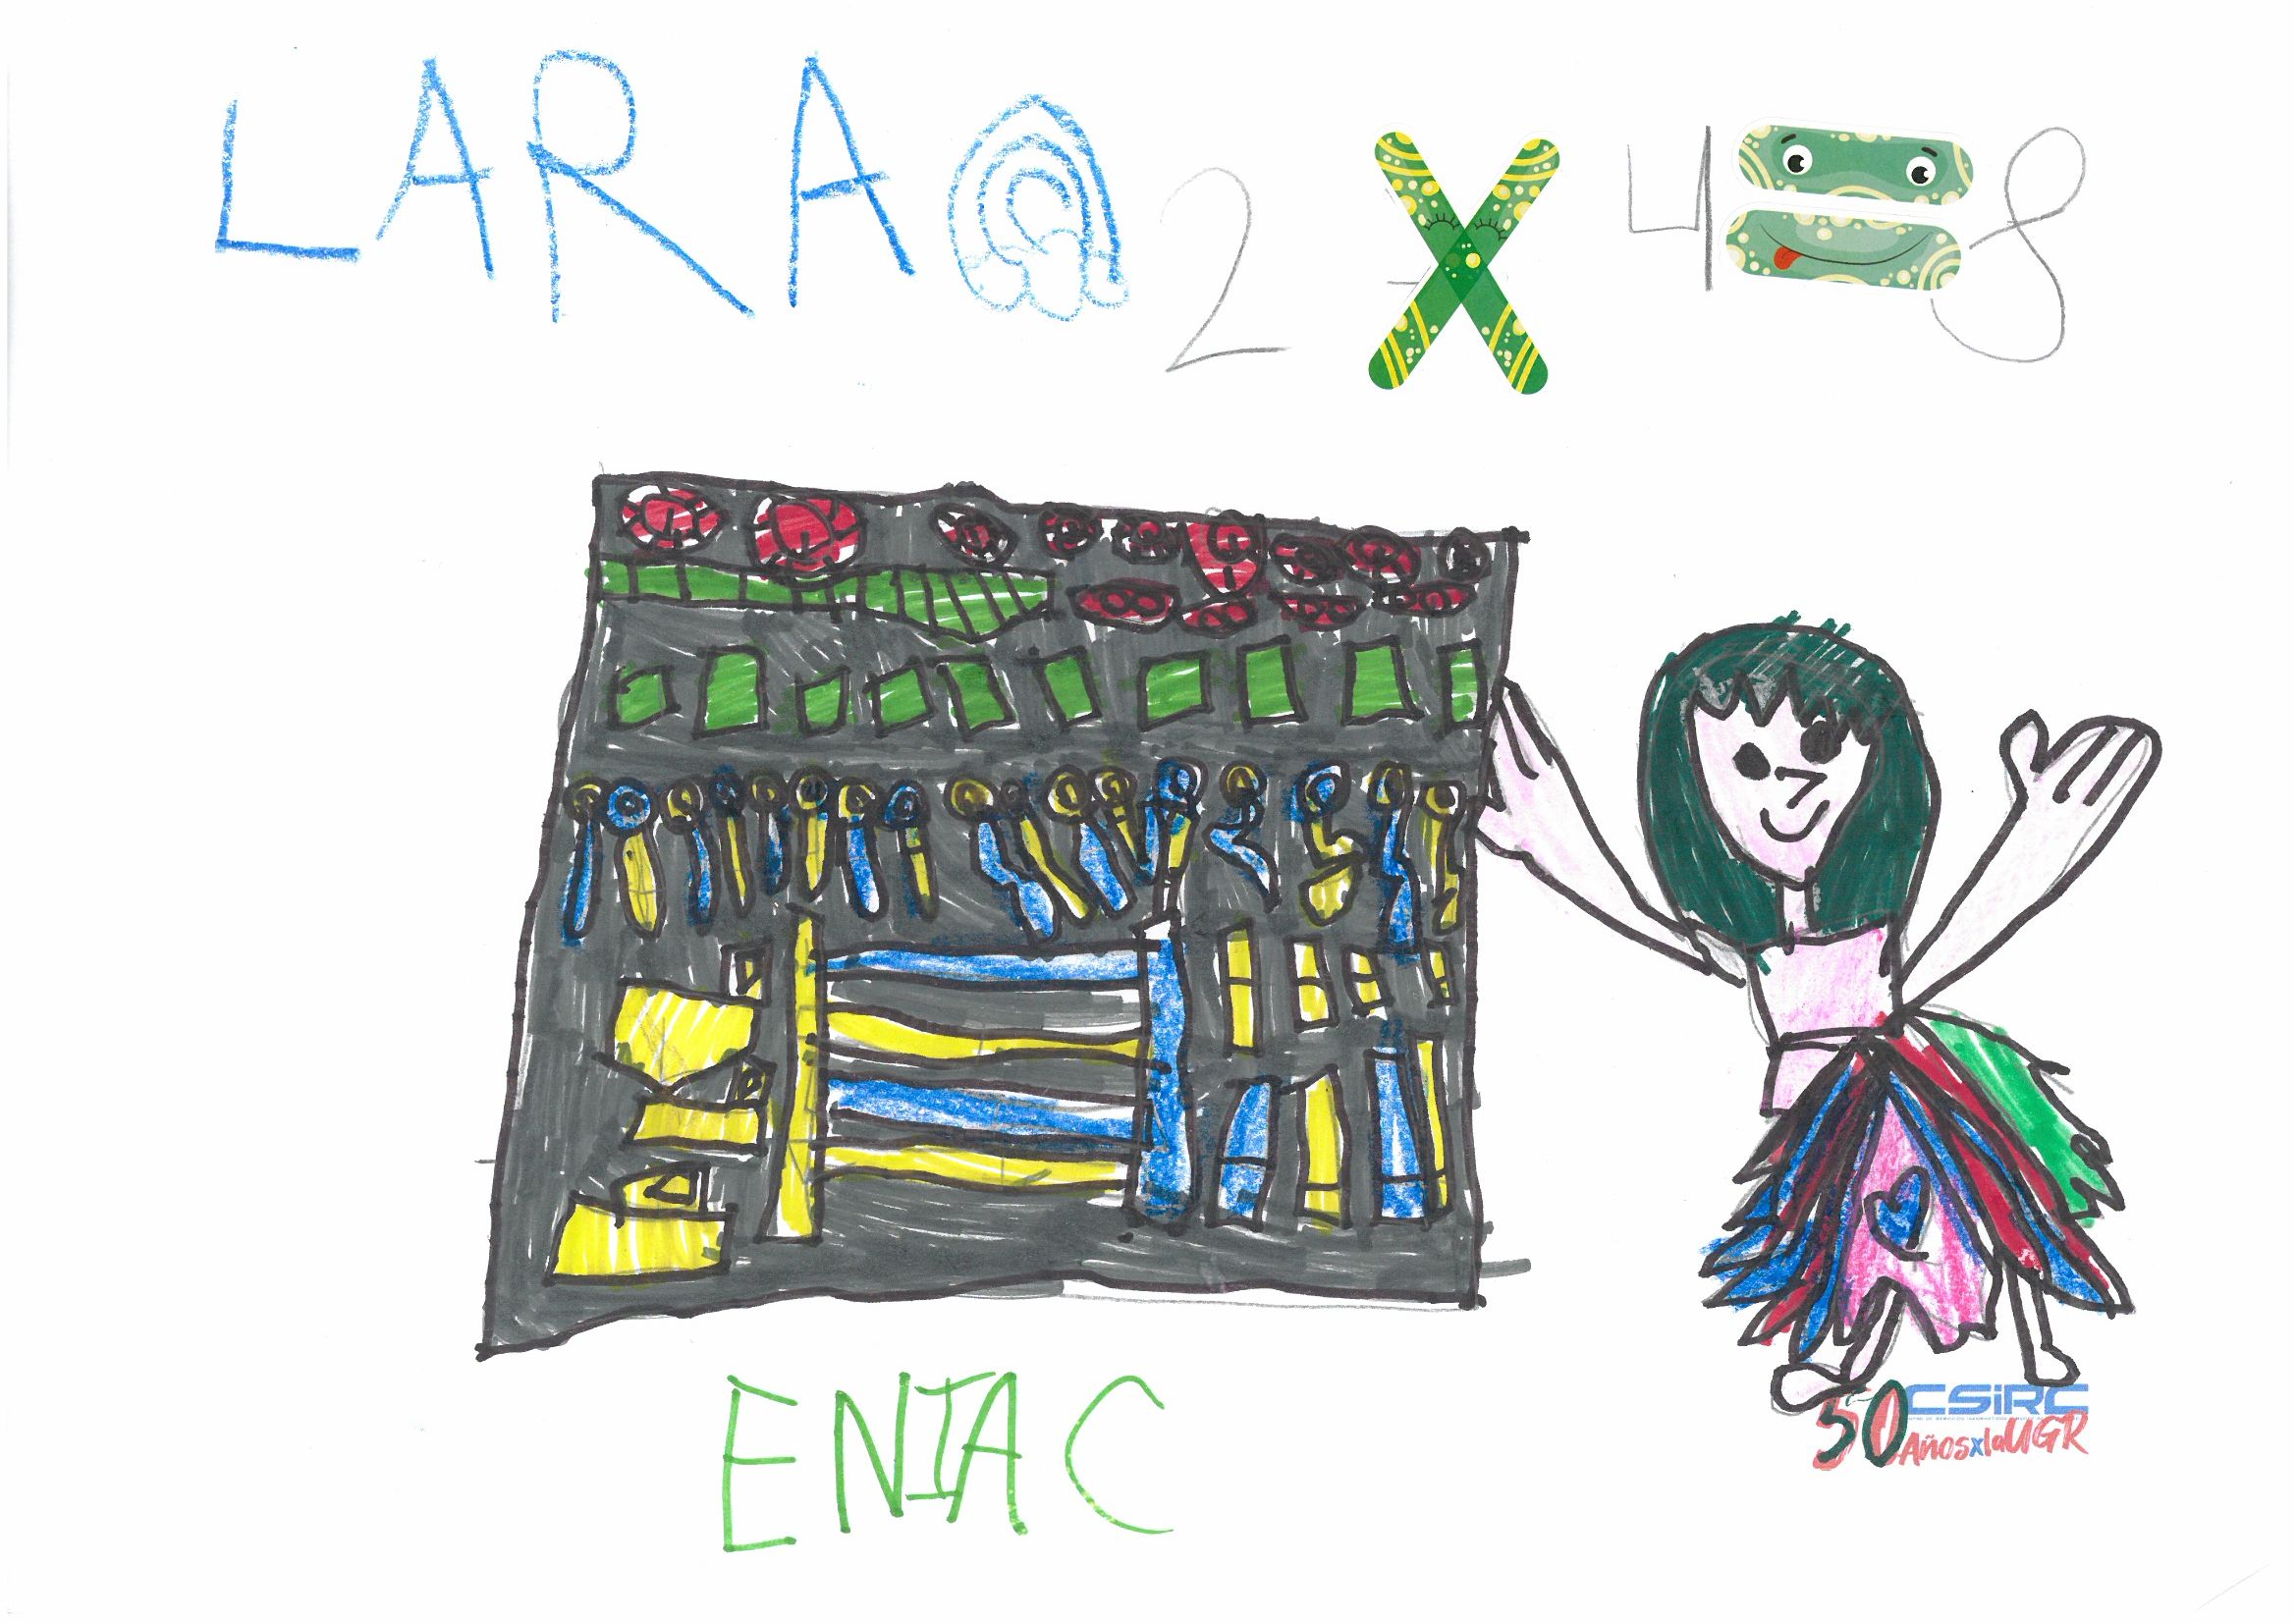 Dibujo infantil del ordenador ENIAC y una figura